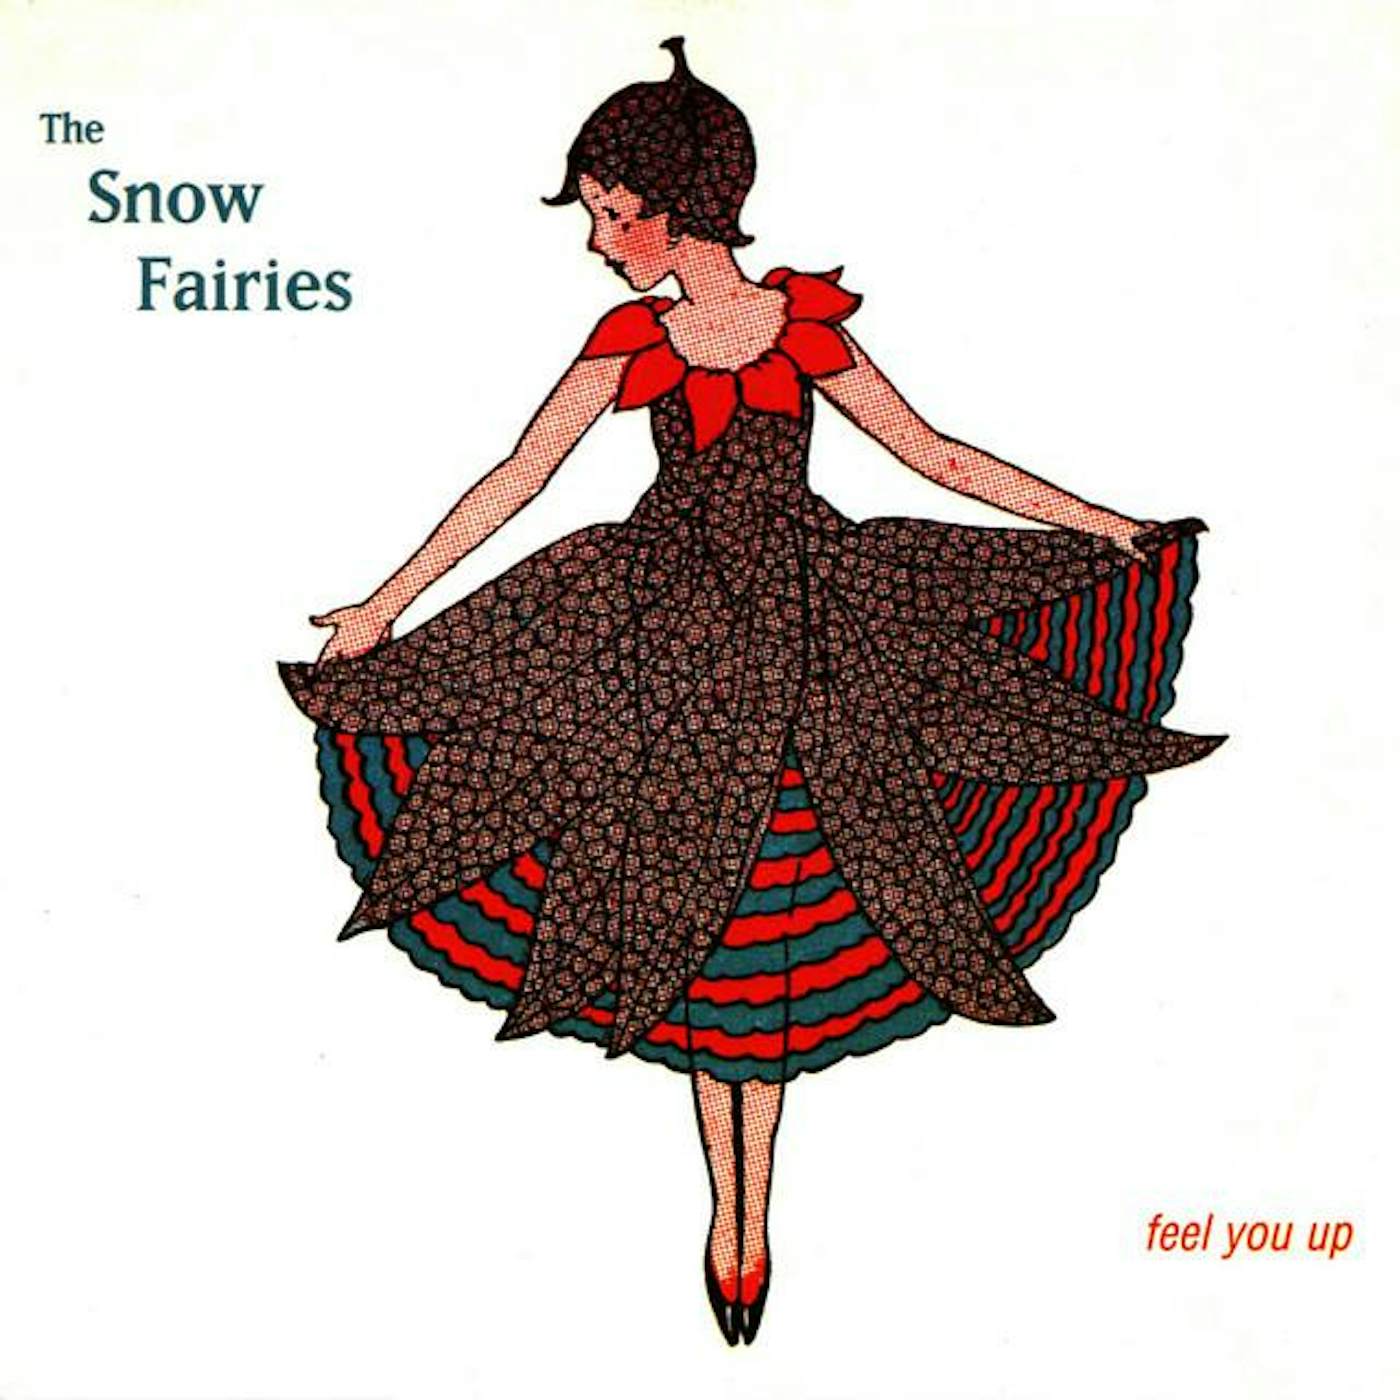 The Snow Fairies